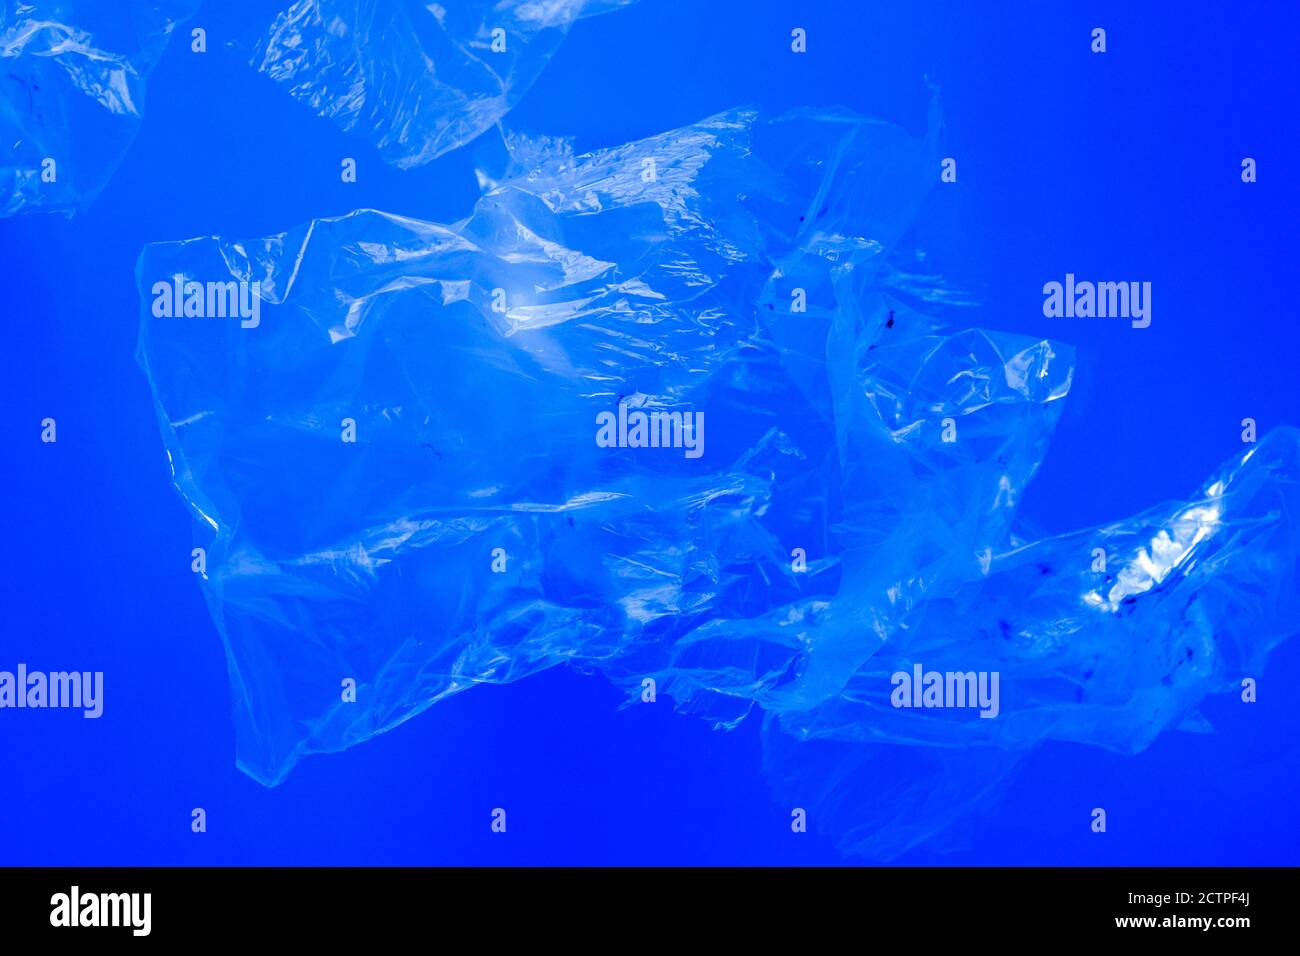 Sacchetti di plastica trasparenti che galleggiano sott'acqua nell'oceano blu, inquinamento da rifiuti di plastica non biodegradabili, pericolo per la fauna marina Foto Stock